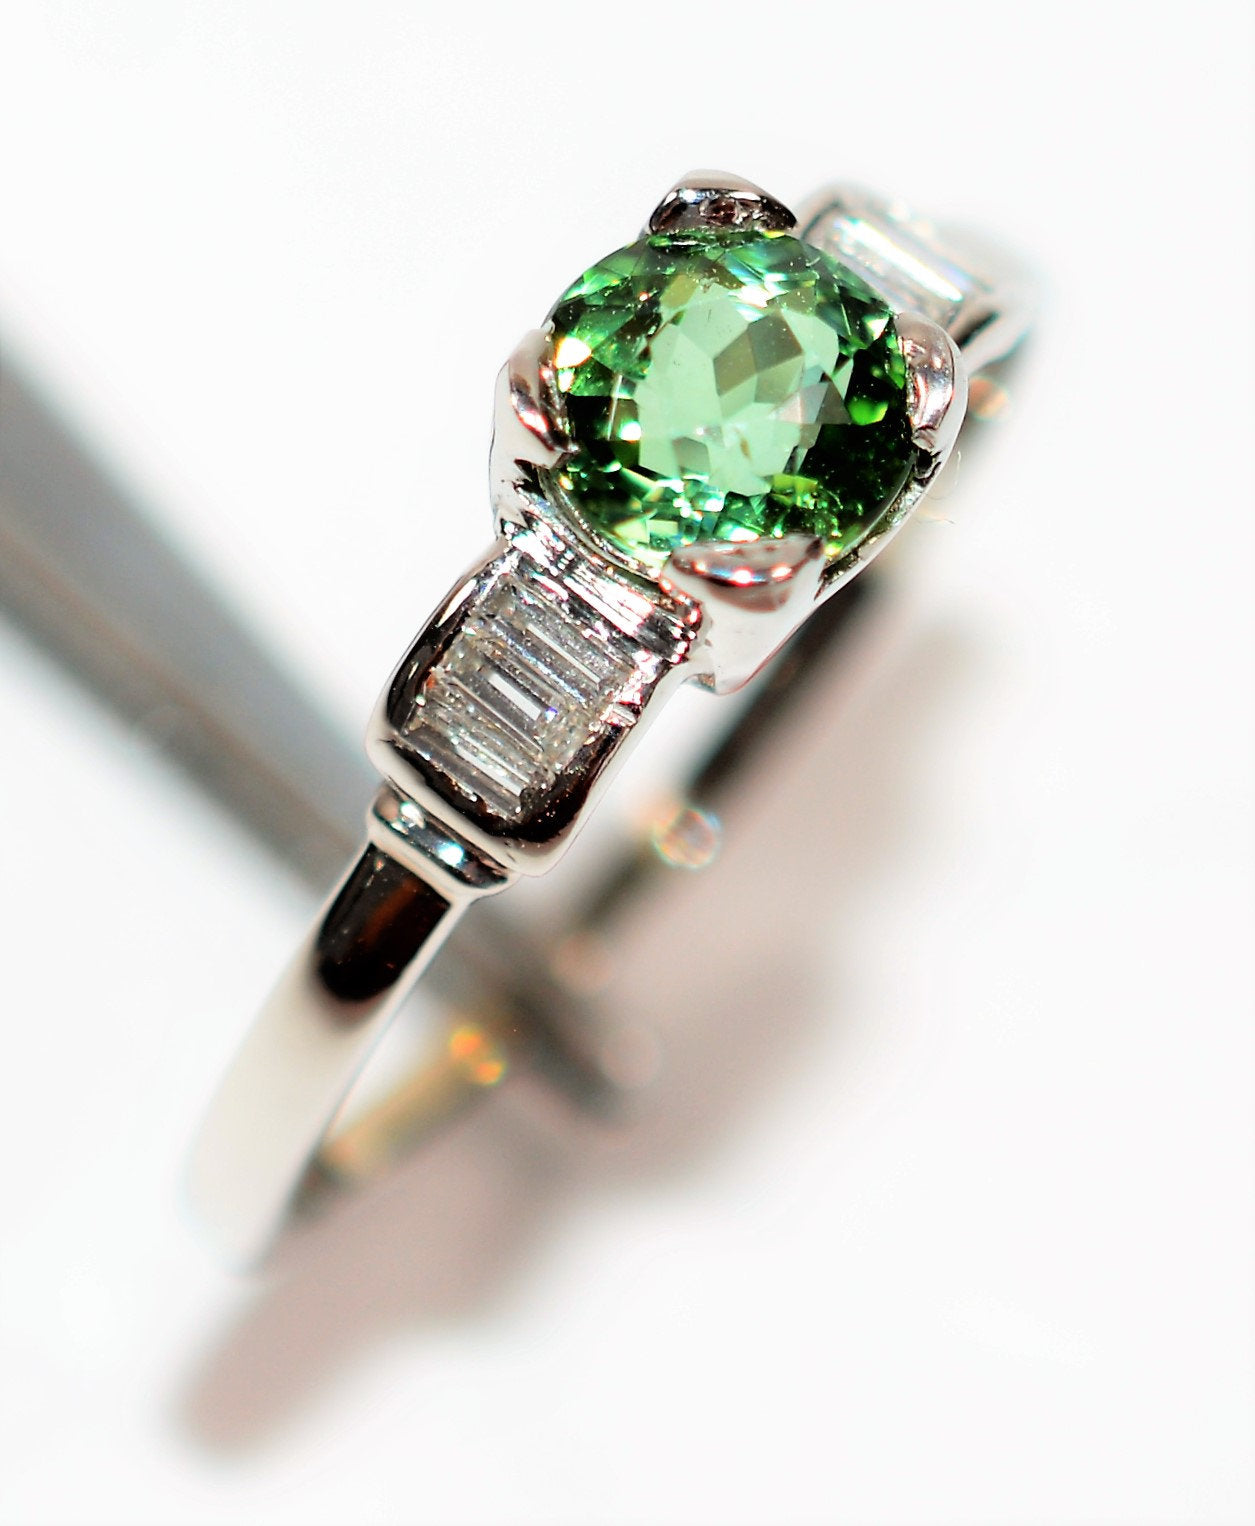 Natural Paraiba Tourmaline & Diamond Ring Platinum 1.36tcw Fine Gemstone Women's Ring Estate Birthstone Ring Engagement Ring Promise Ring